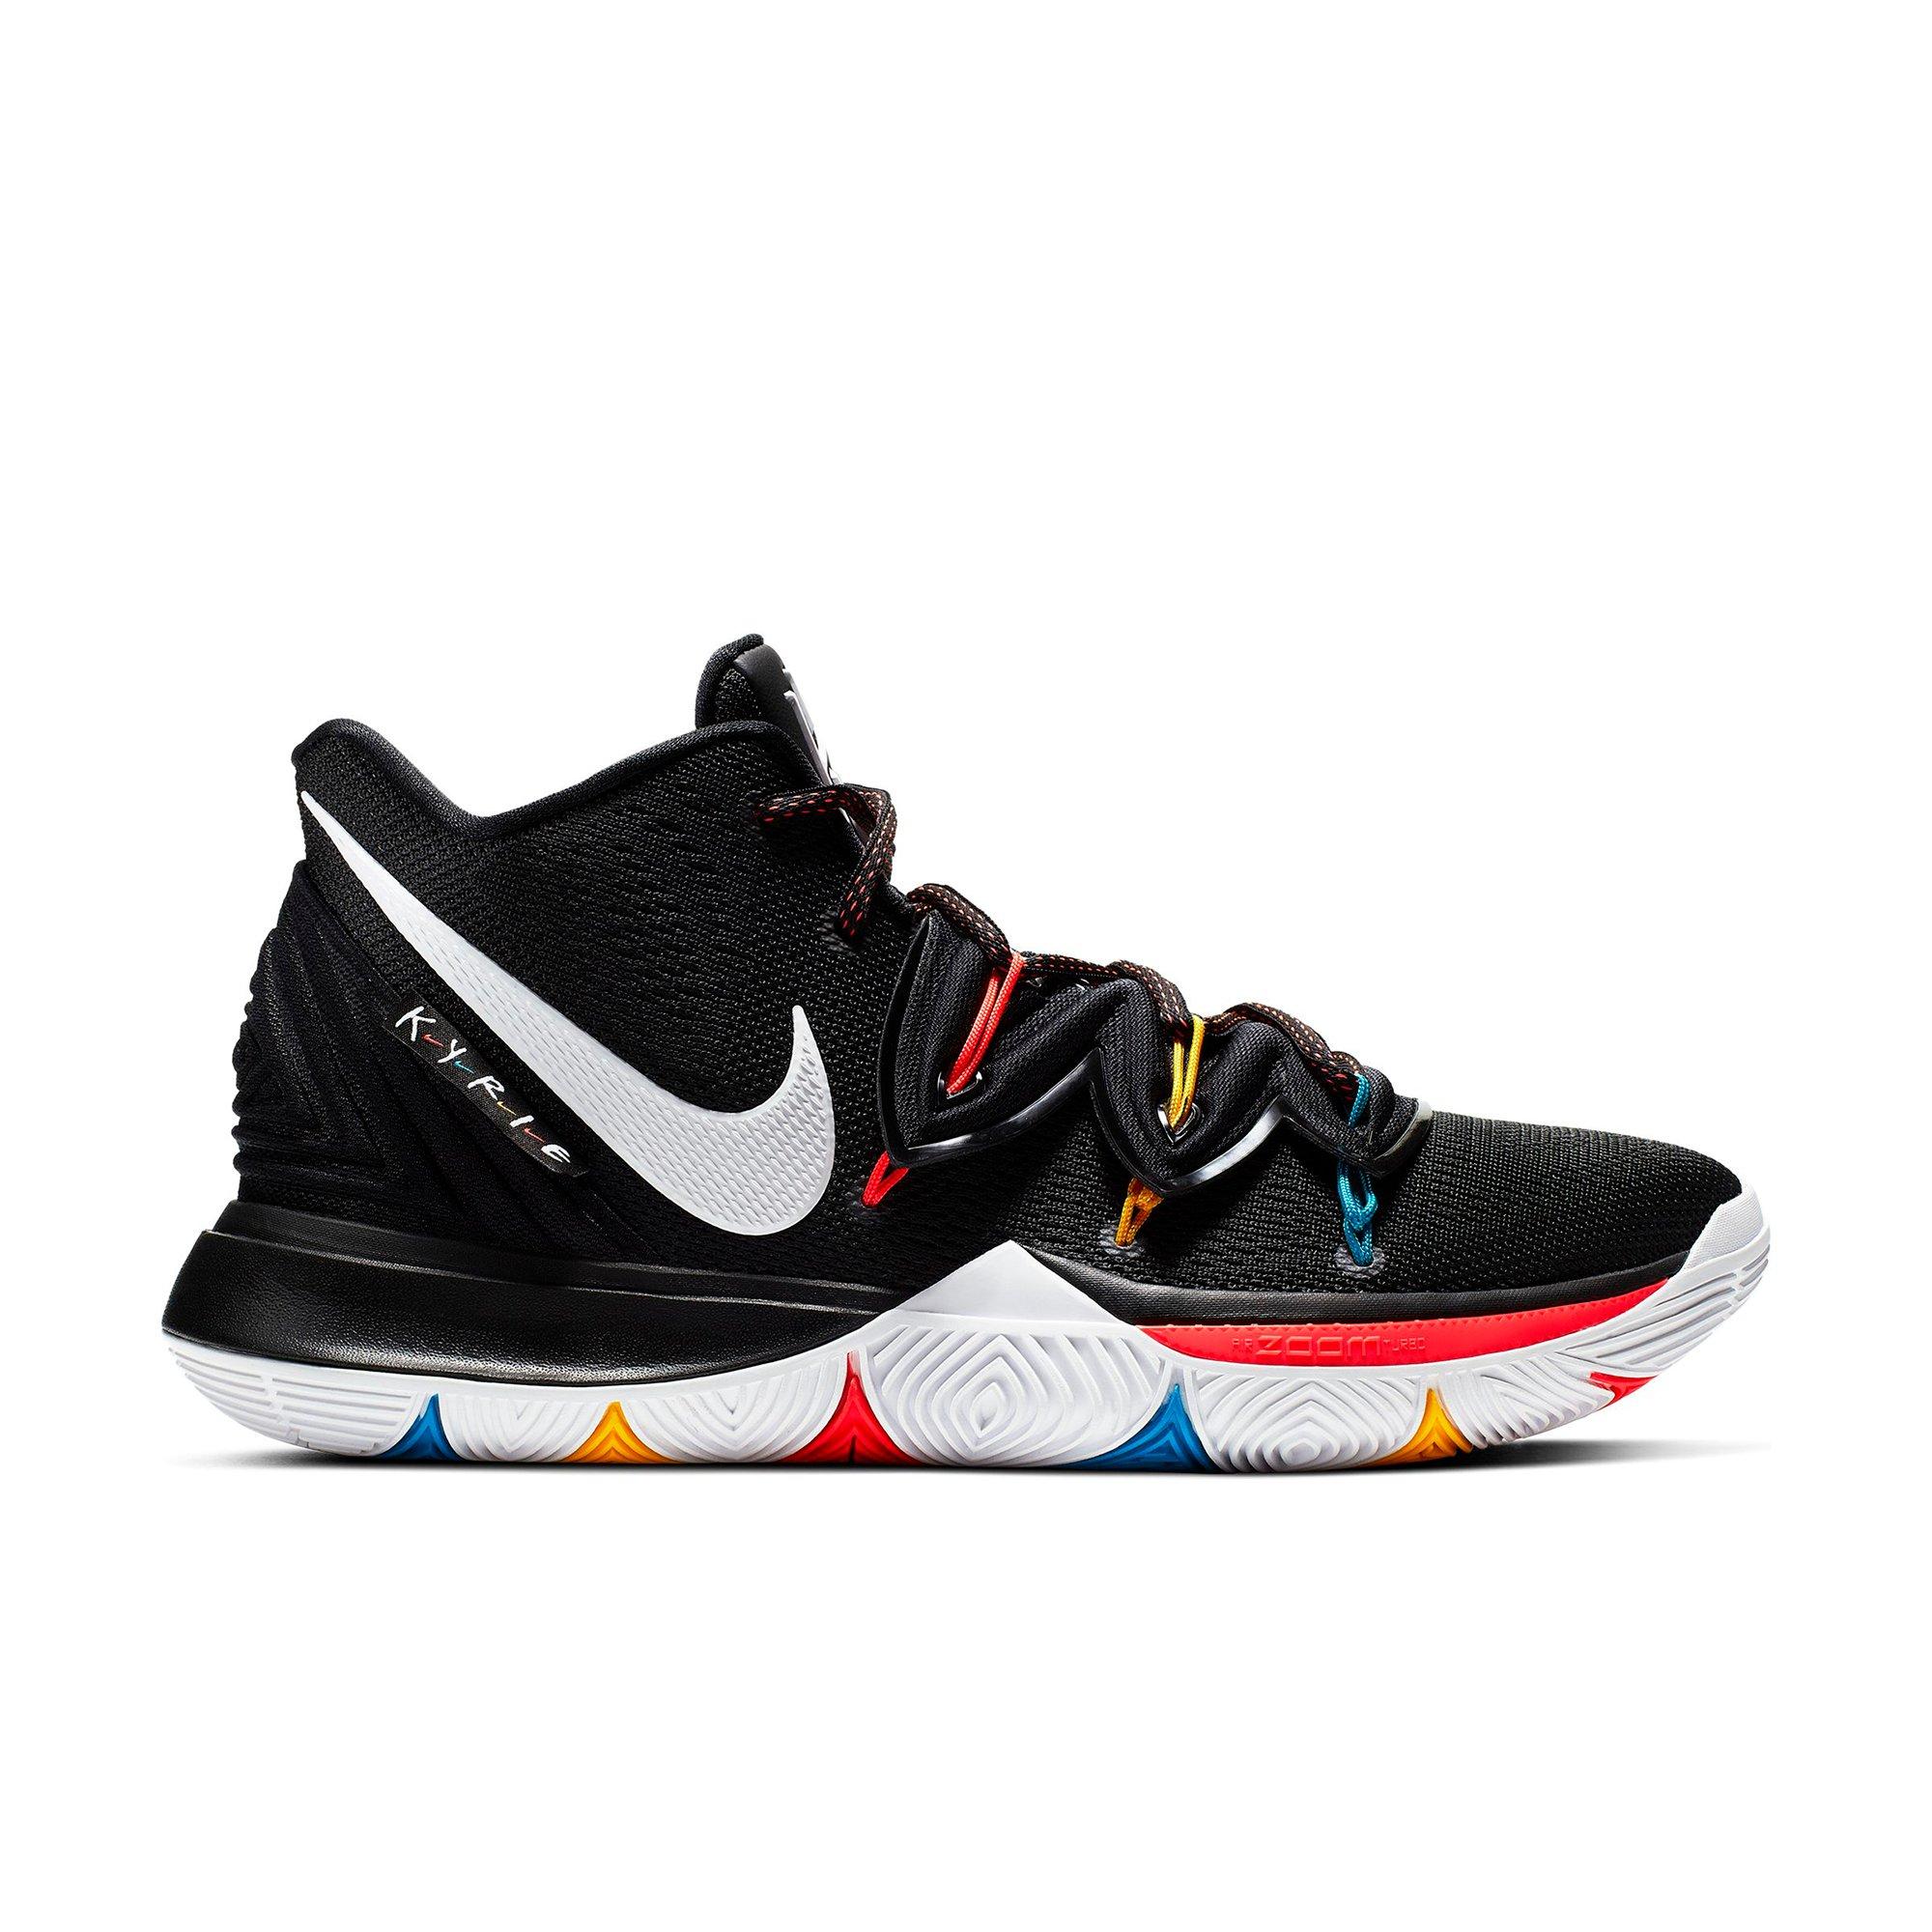 Sneaker Release: Nike Kyrie 5 “Black 